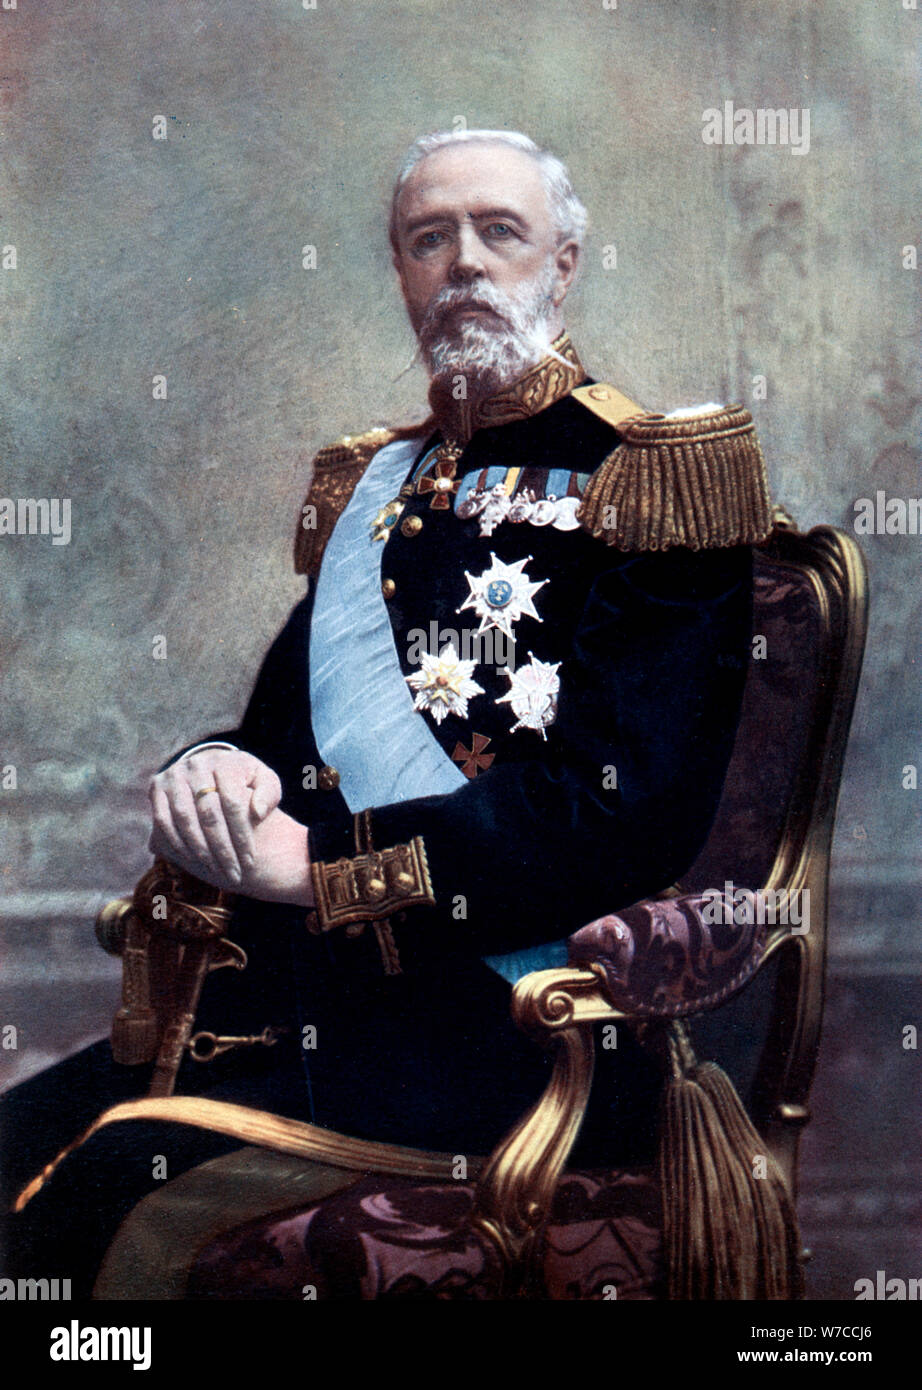 El rey Oscar II de Suecia, de finales del XIX y principios del siglo XX. Artista: Desconocido Foto de stock